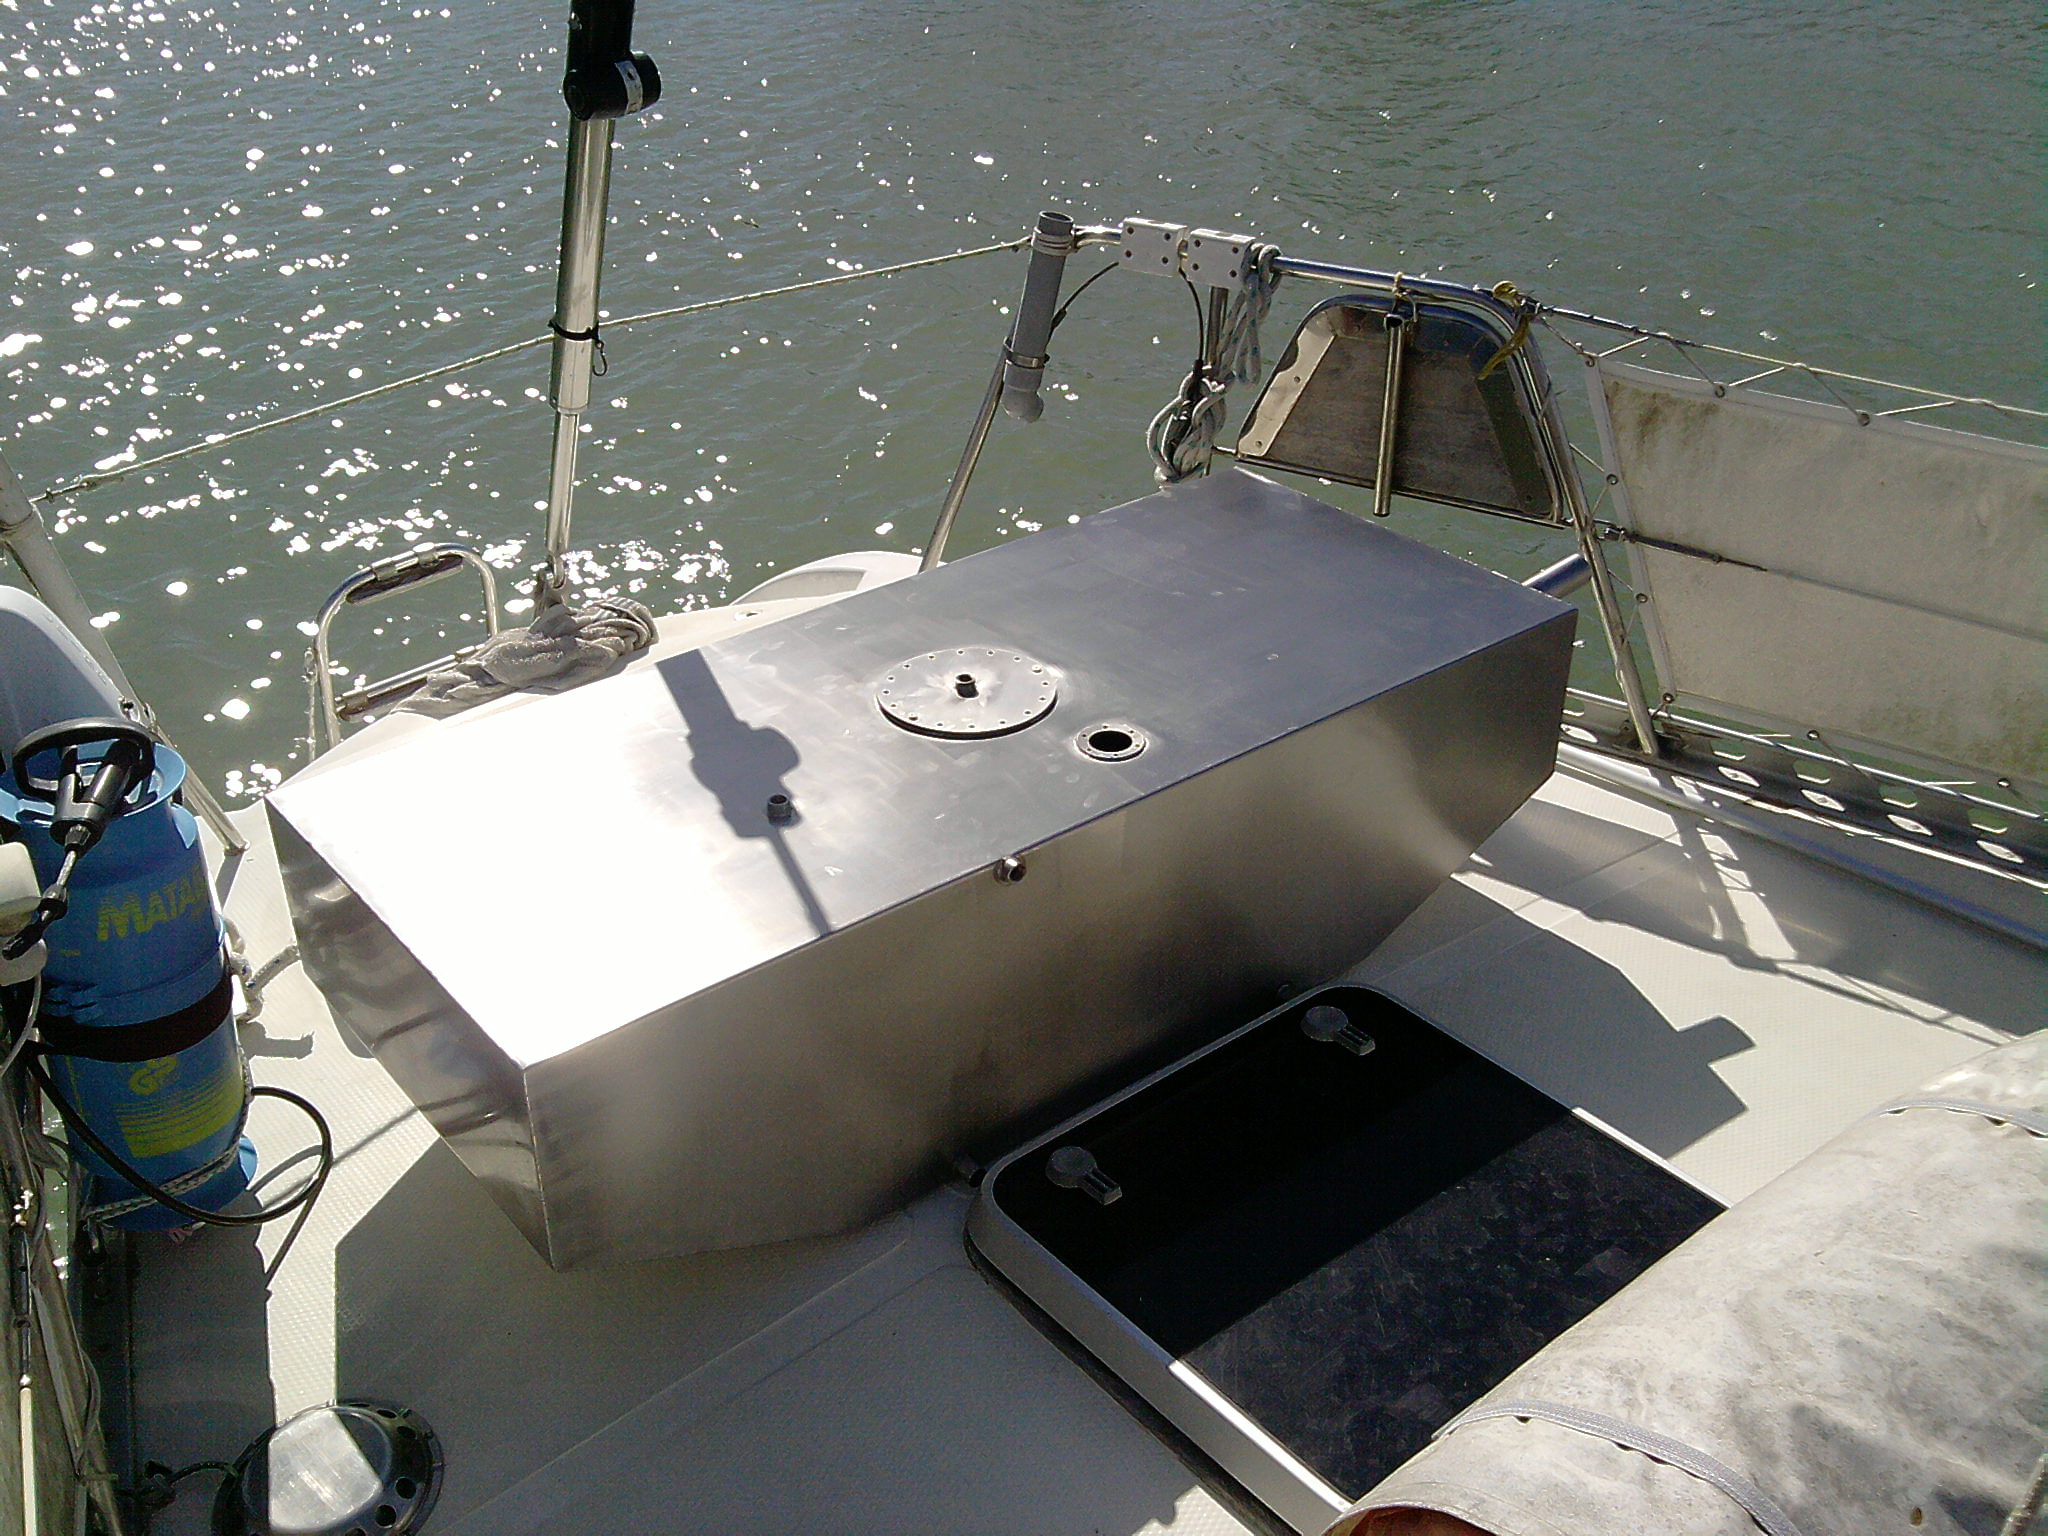  Accesorios para embarcaciones de recreo en acero inoxidable AISI 316L resistente al ambiente marino 